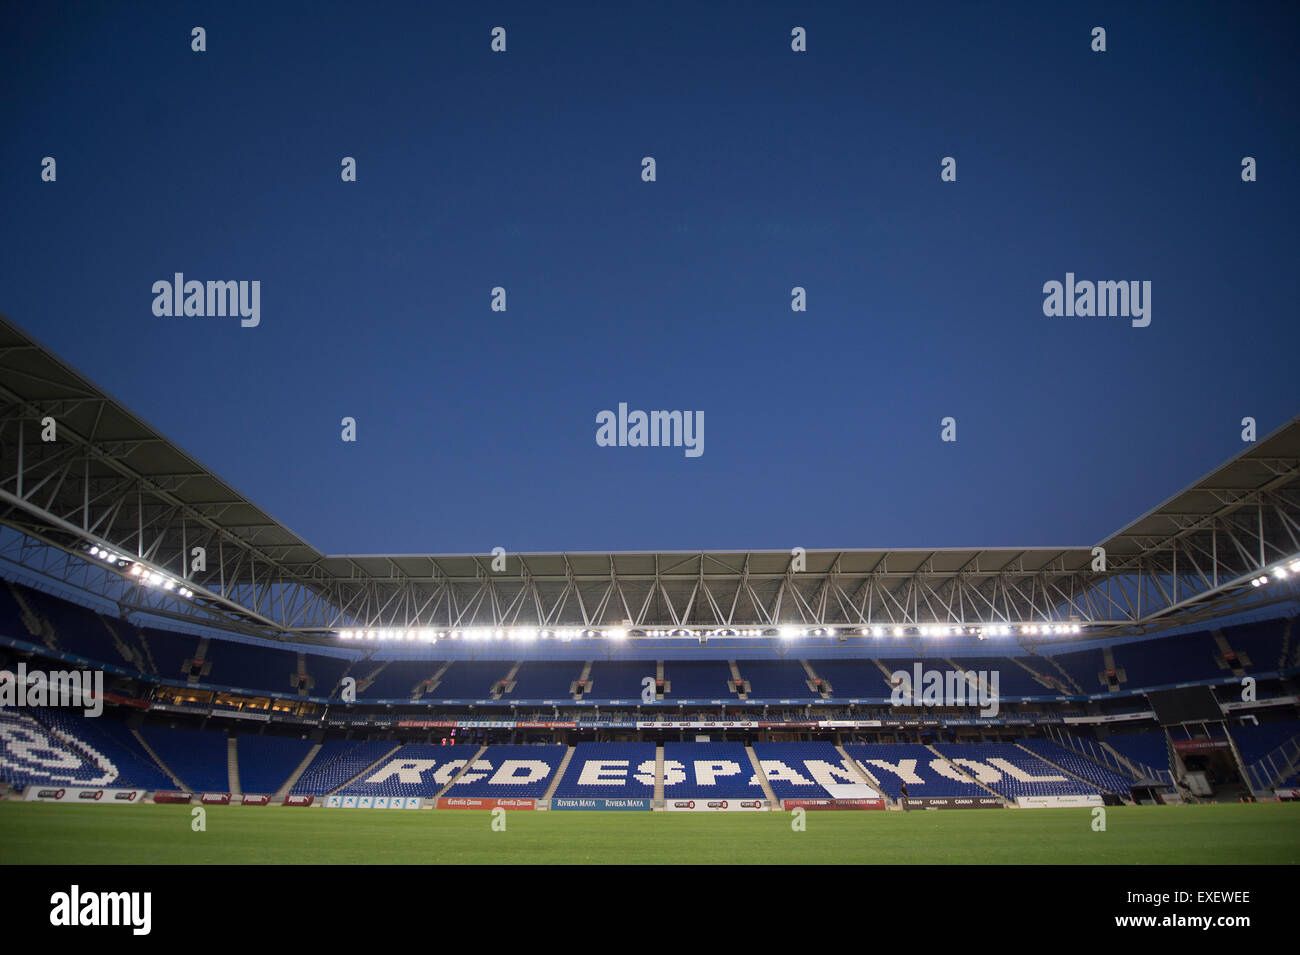 Rcd espanyol stadium immagini e fotografie stock ad alta risoluzione - Alamy